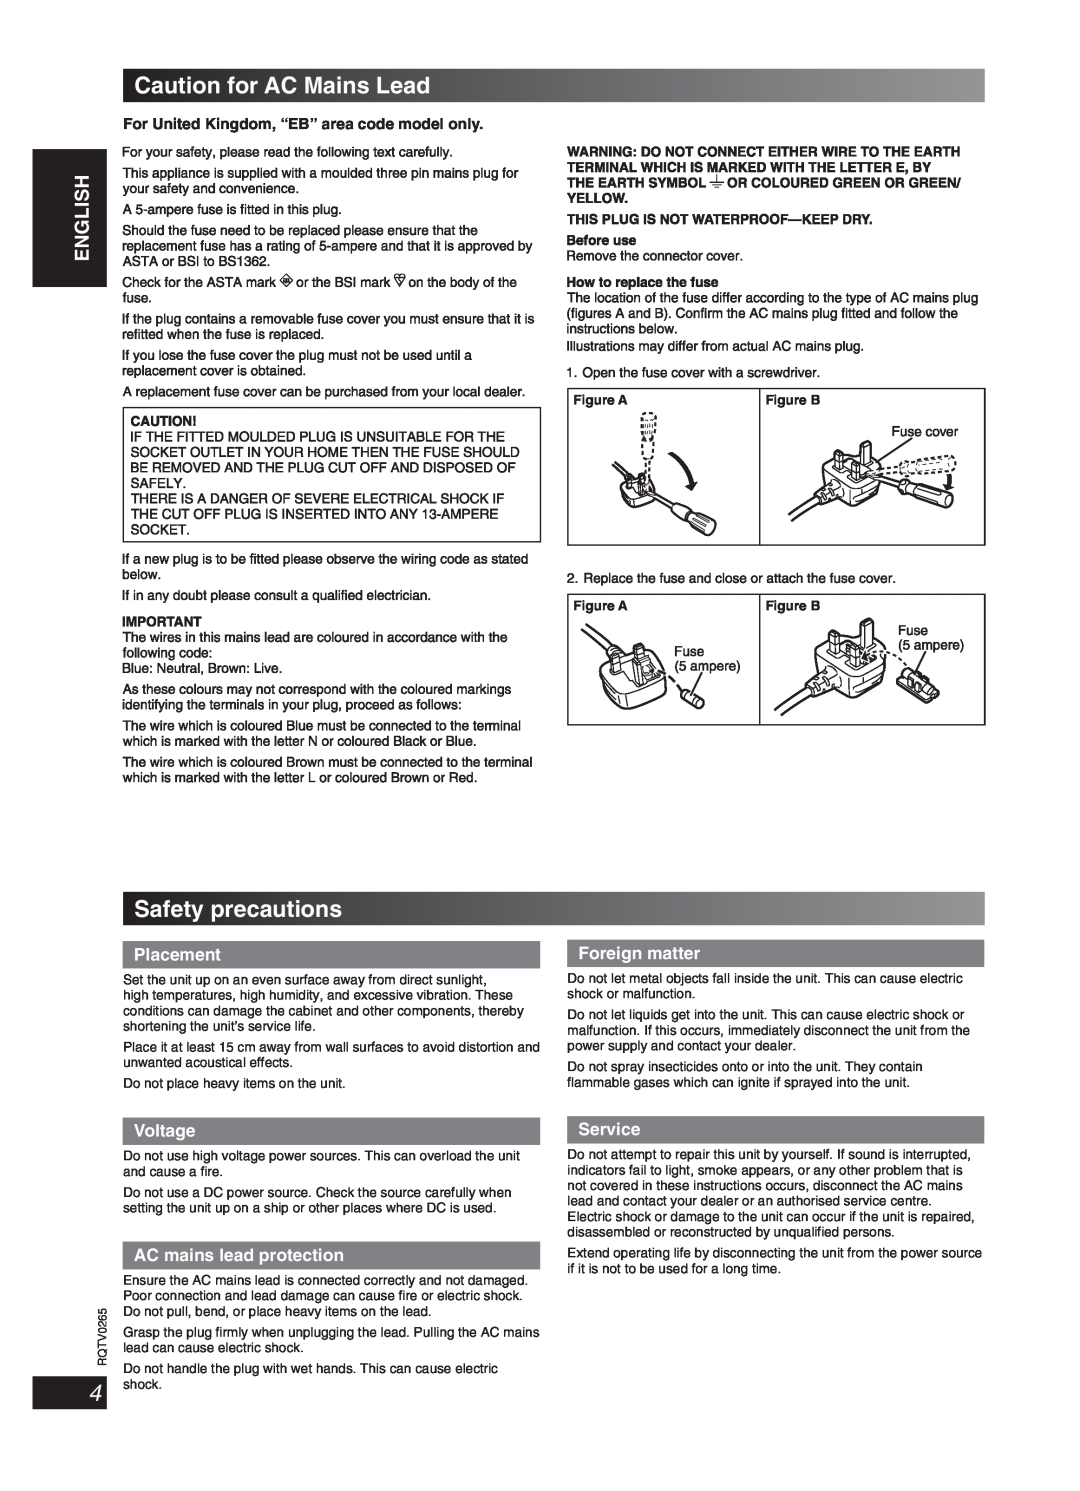 Panasonic SC-PM86D Caution for AC Mains Lead, Safety precautions, English Dansk Français, Lang, Placement, Foreign matter 